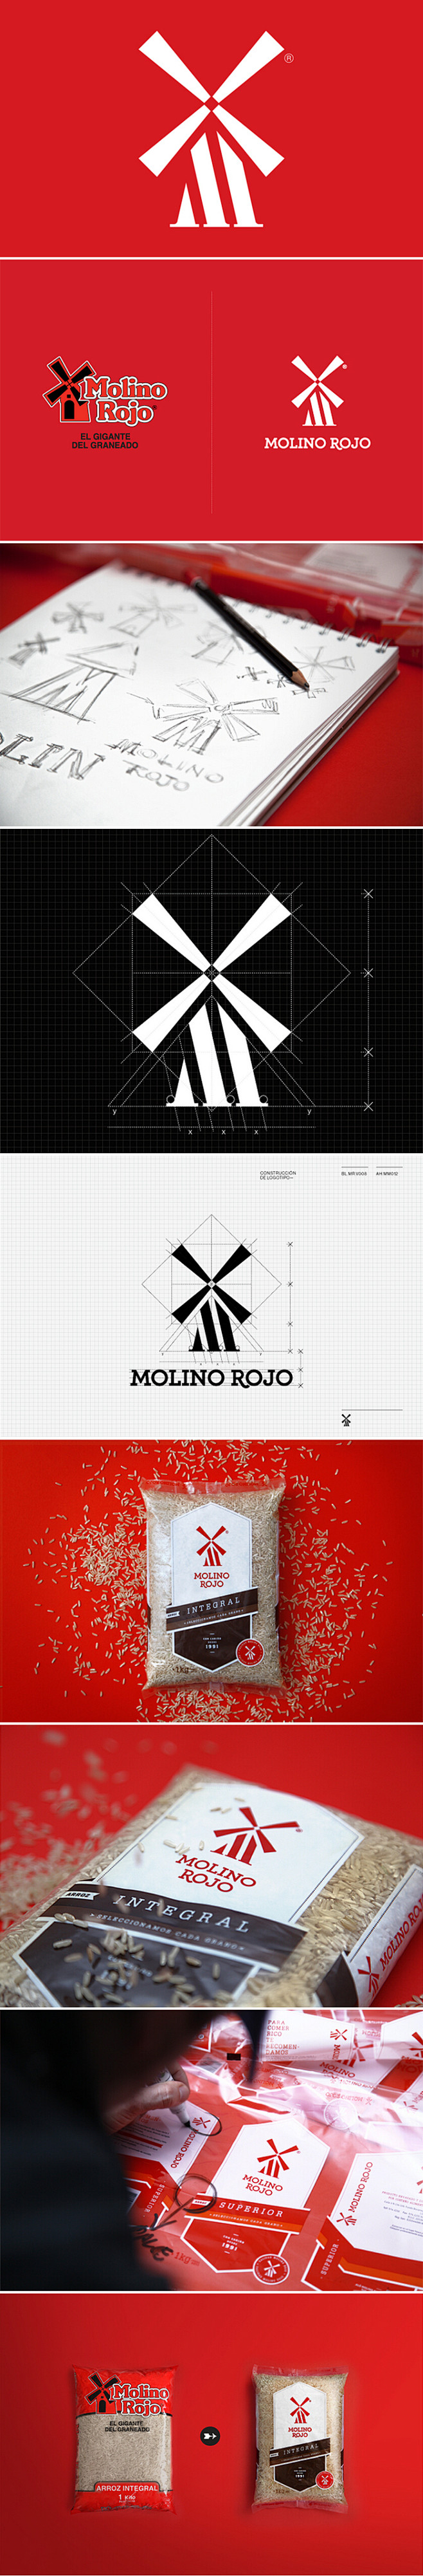 【Molino Rojo糙米】品牌形象设...